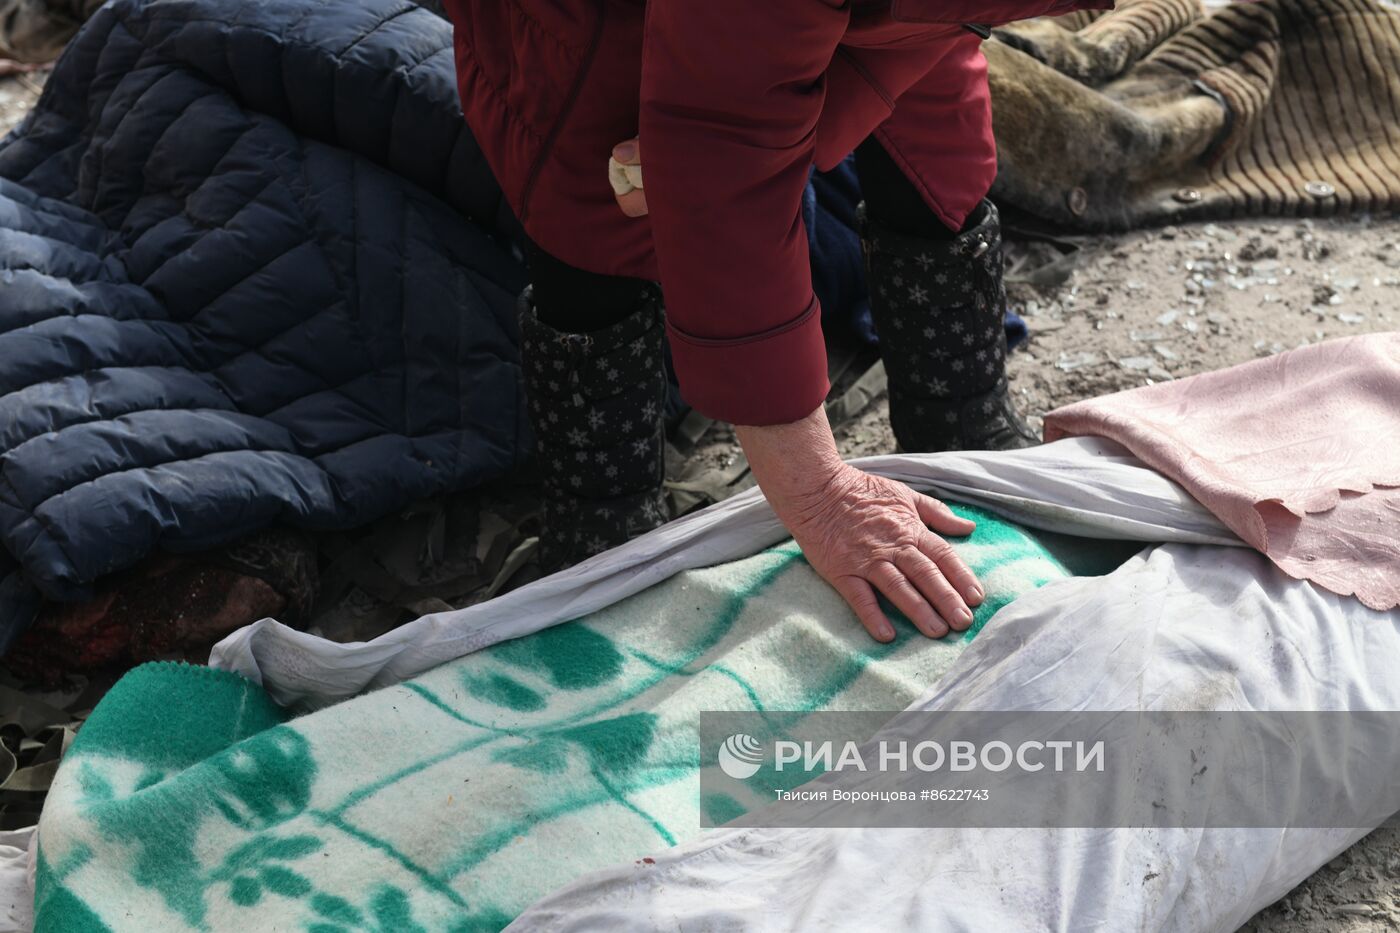 Четыре человека погибли при обстреле ВСУ Пантелеймоновки в ДНР